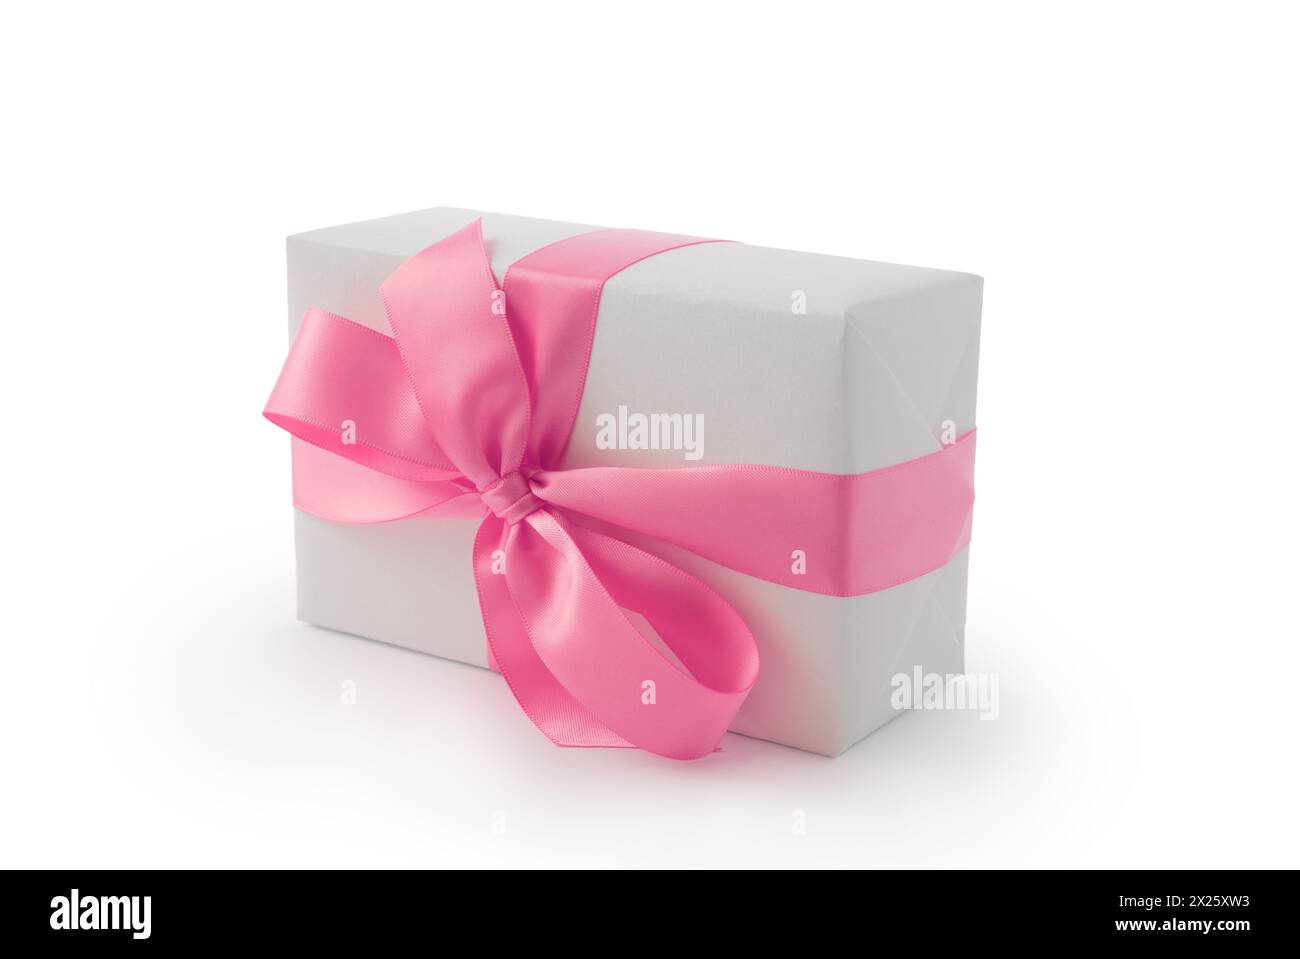 Confezione regalo bianca con fiocco a nastro rosa isolata su sfondo bianco, oggetto natalizio Foto Stock